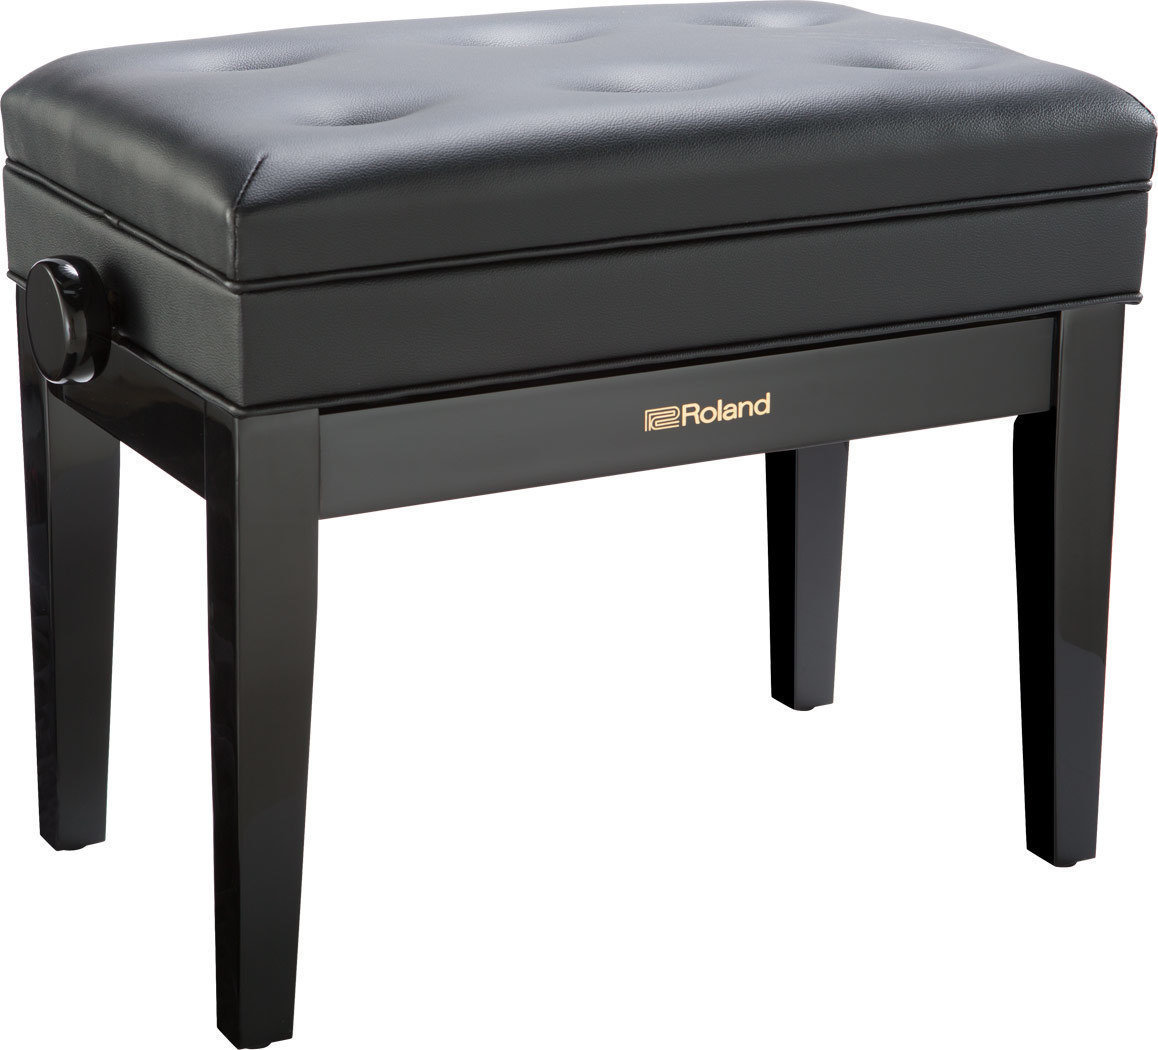 Klaverstole af træ eller klassiske klaverstole Roland RPB-400PE-EU Polished Ebony